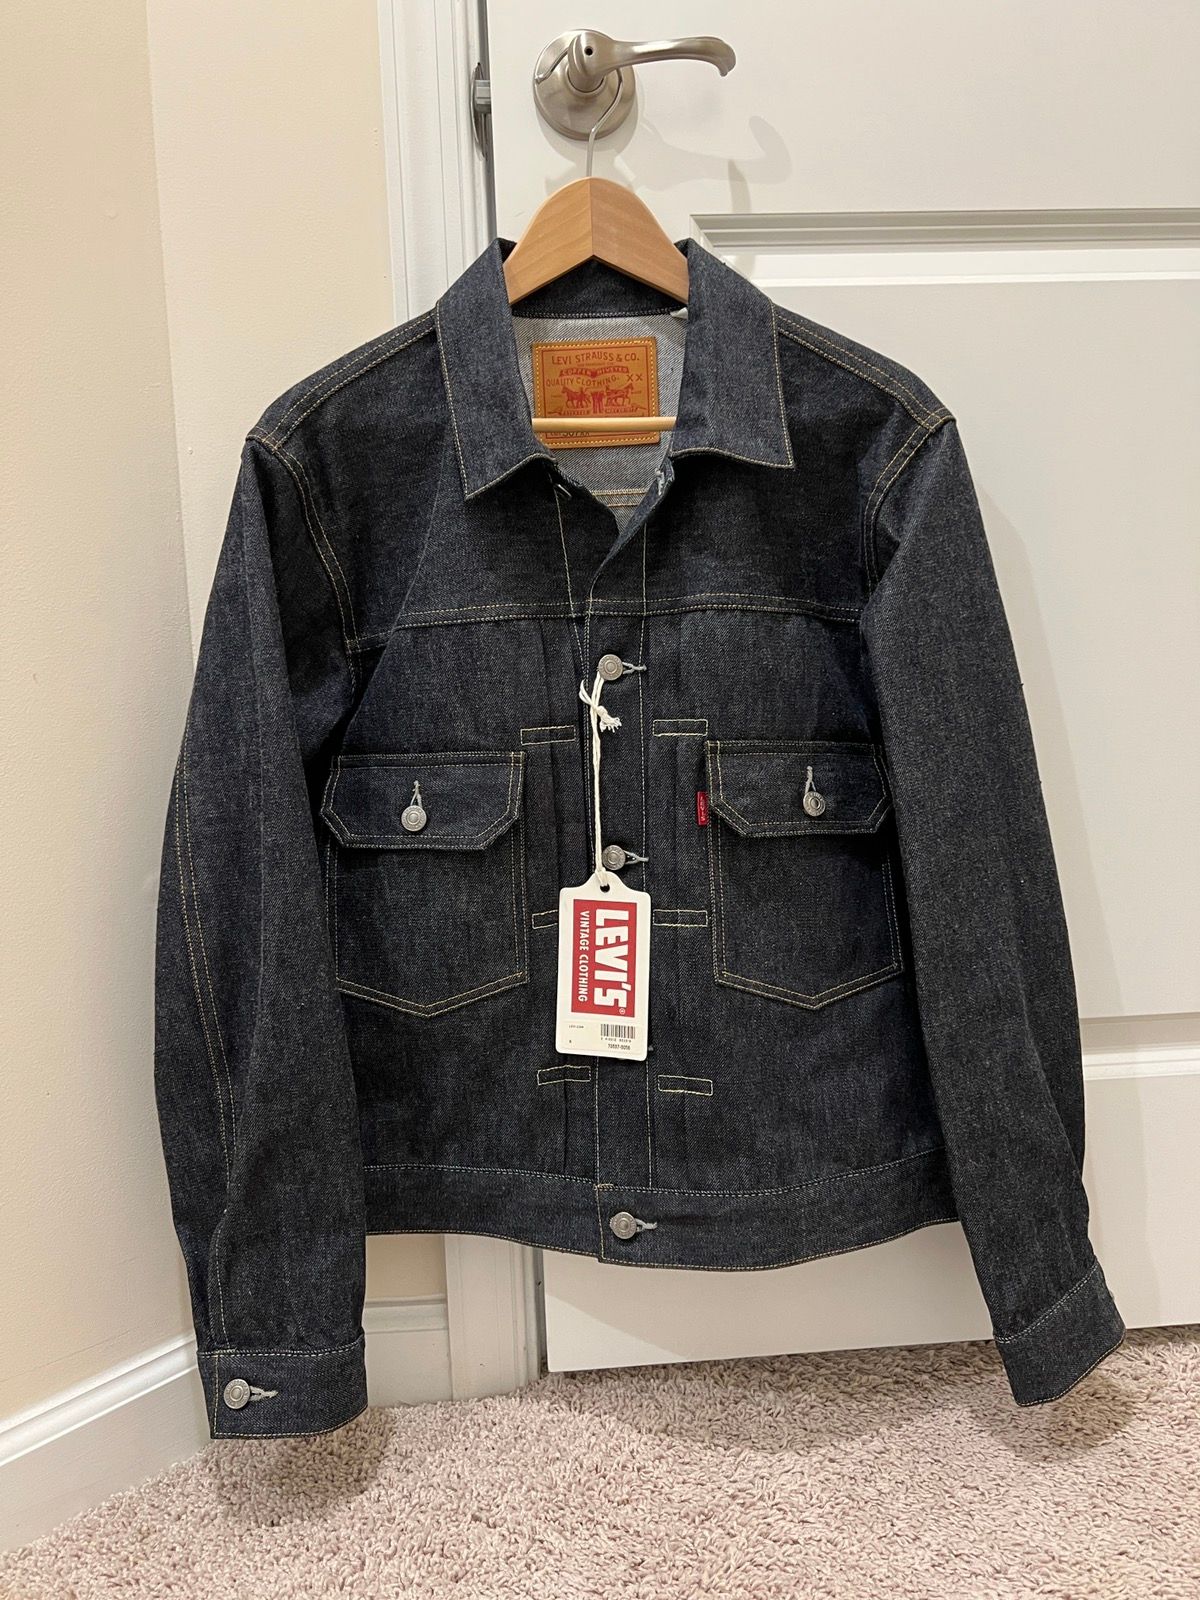 Levi's Vintage Clothing 1936 Type I Denim Jacket